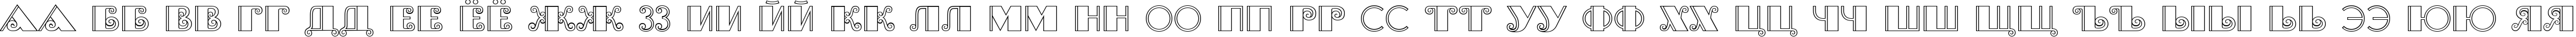 Пример написания русского алфавита шрифтом Brasileiro Two Medium